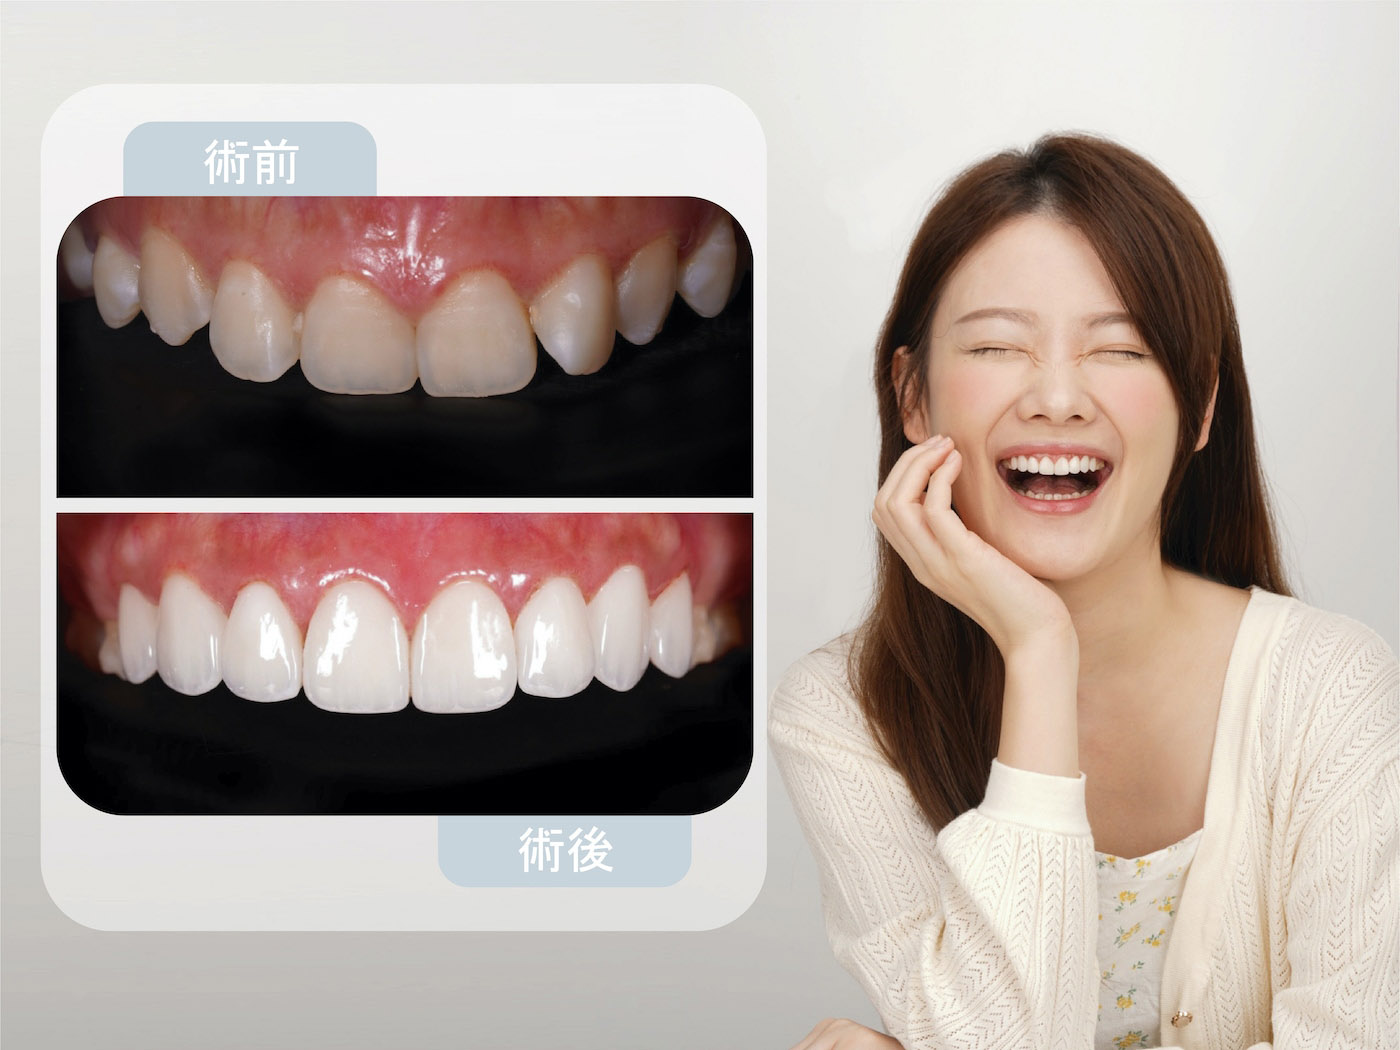 完成隱適美Lite與陶瓷貼片，患者牙齒變得整齊白皙透亮，露出完美笑容